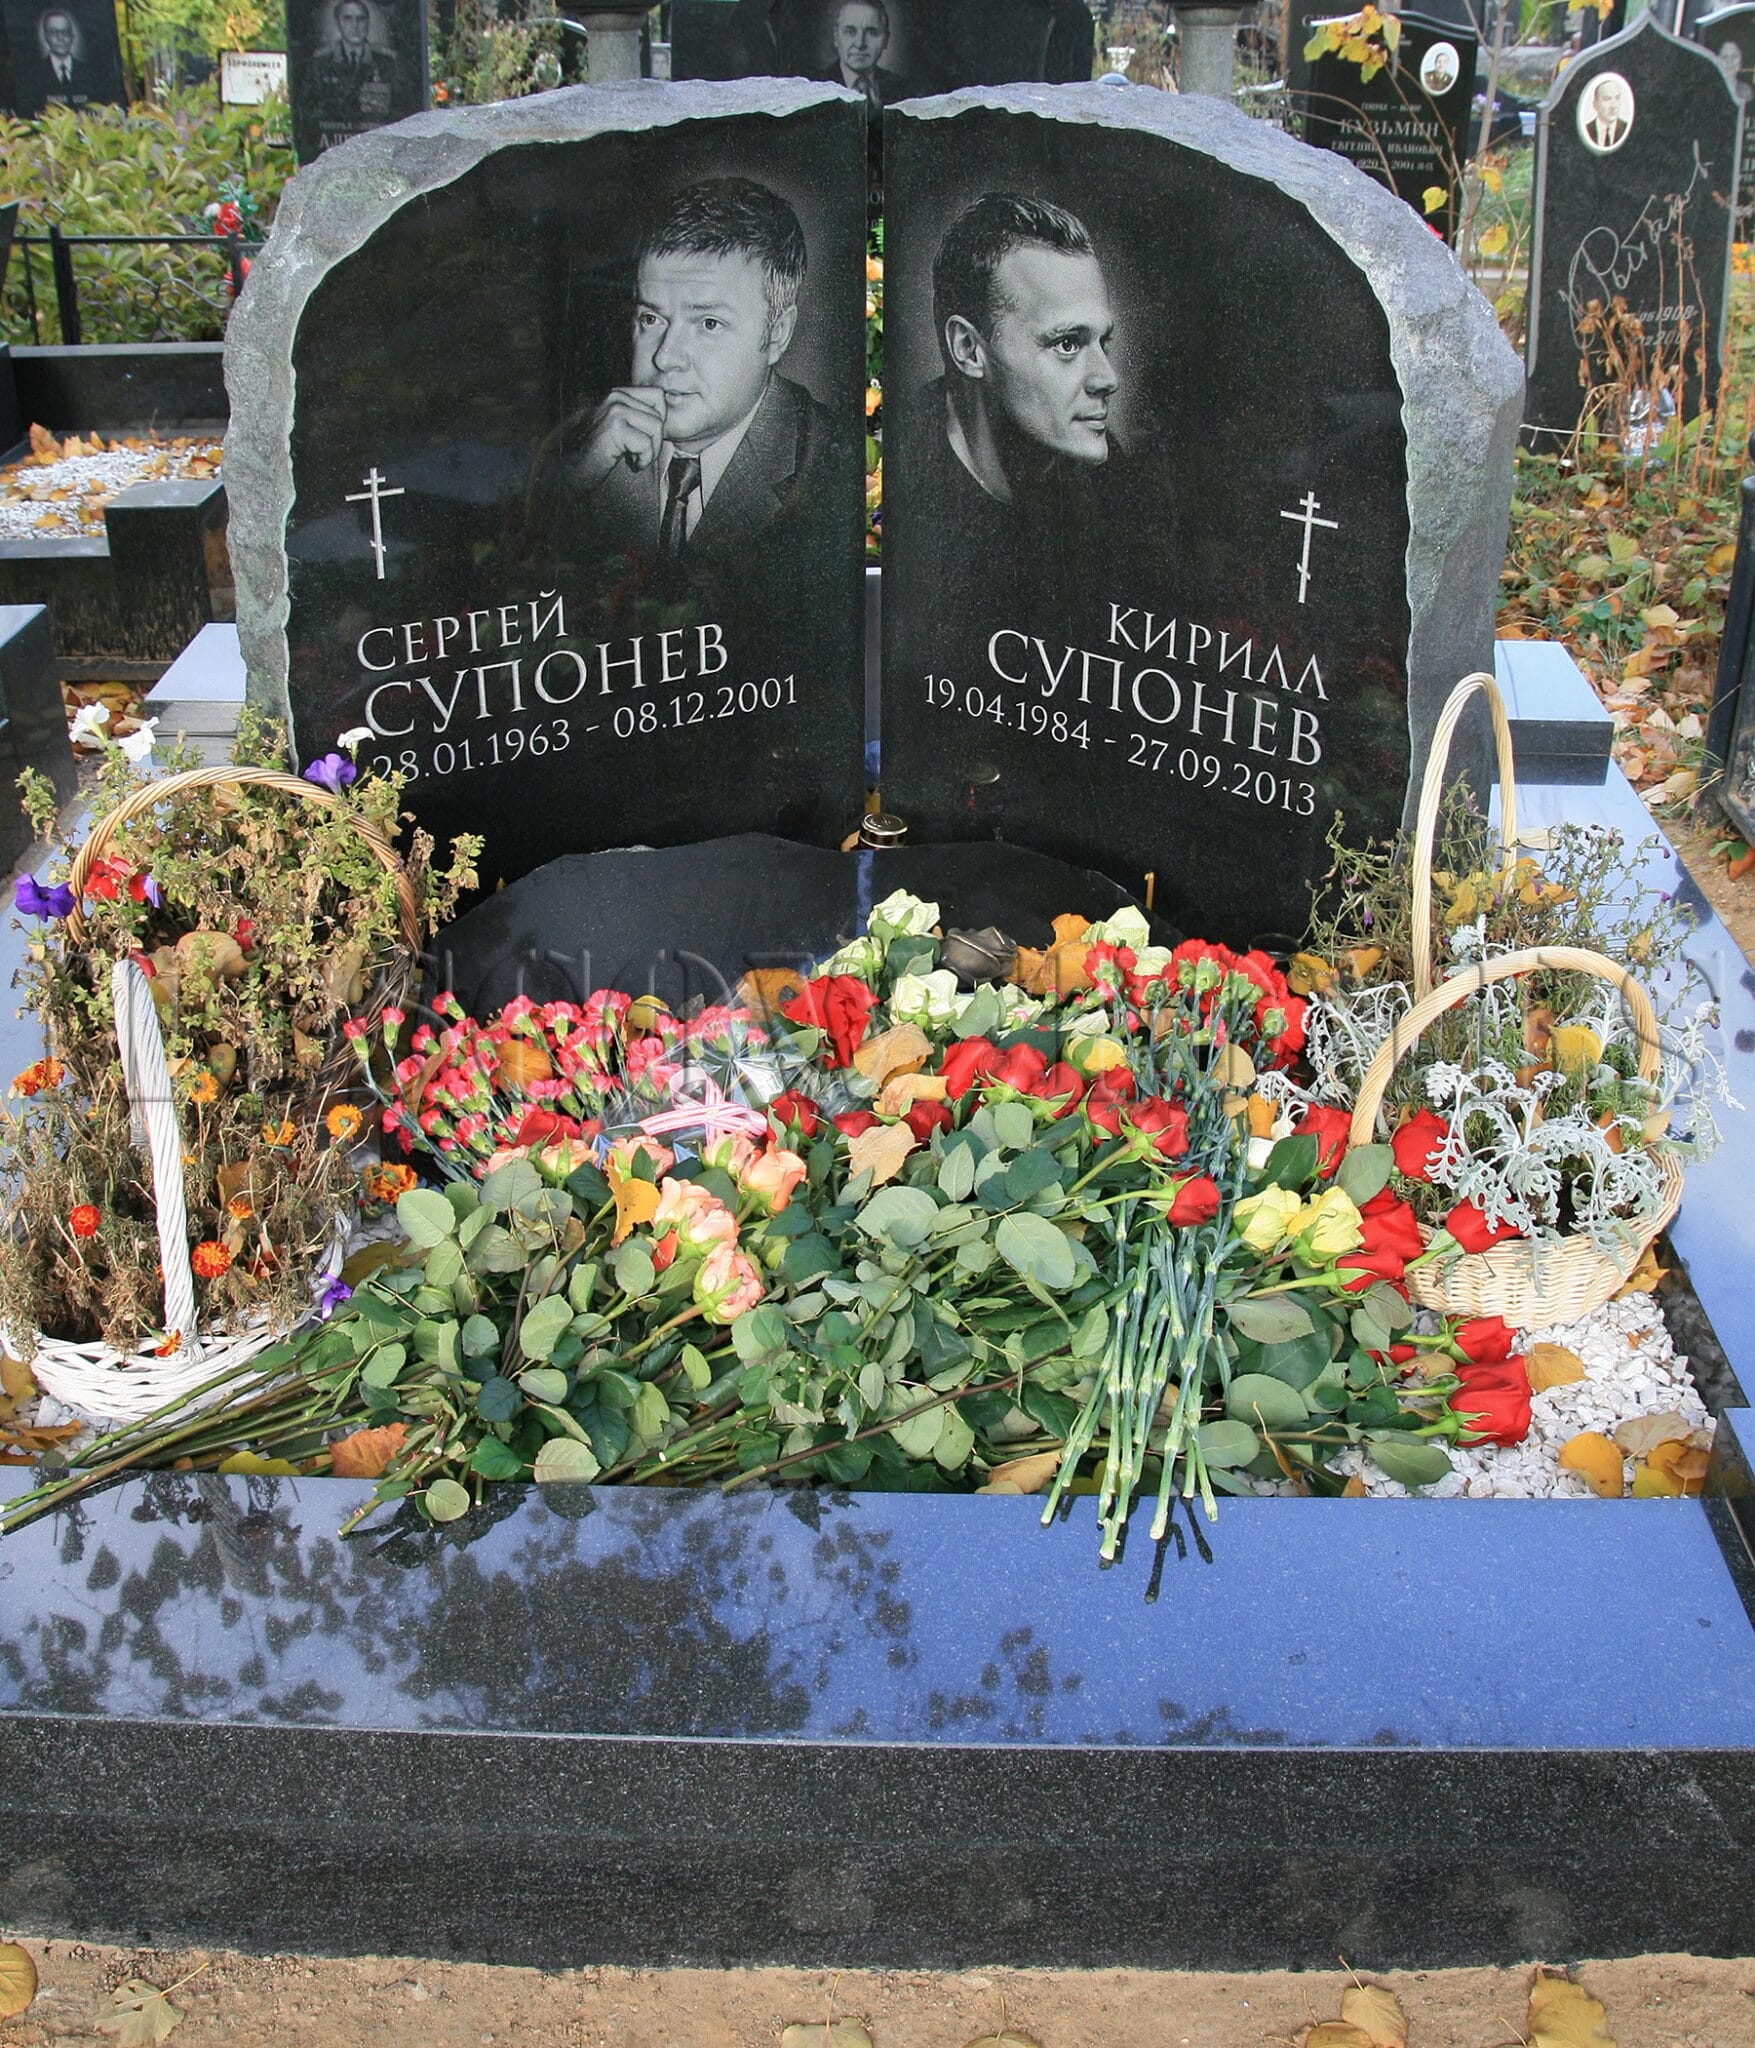 Смерть по наследству: почему сын Сергея Супонева повторил судьбу отца